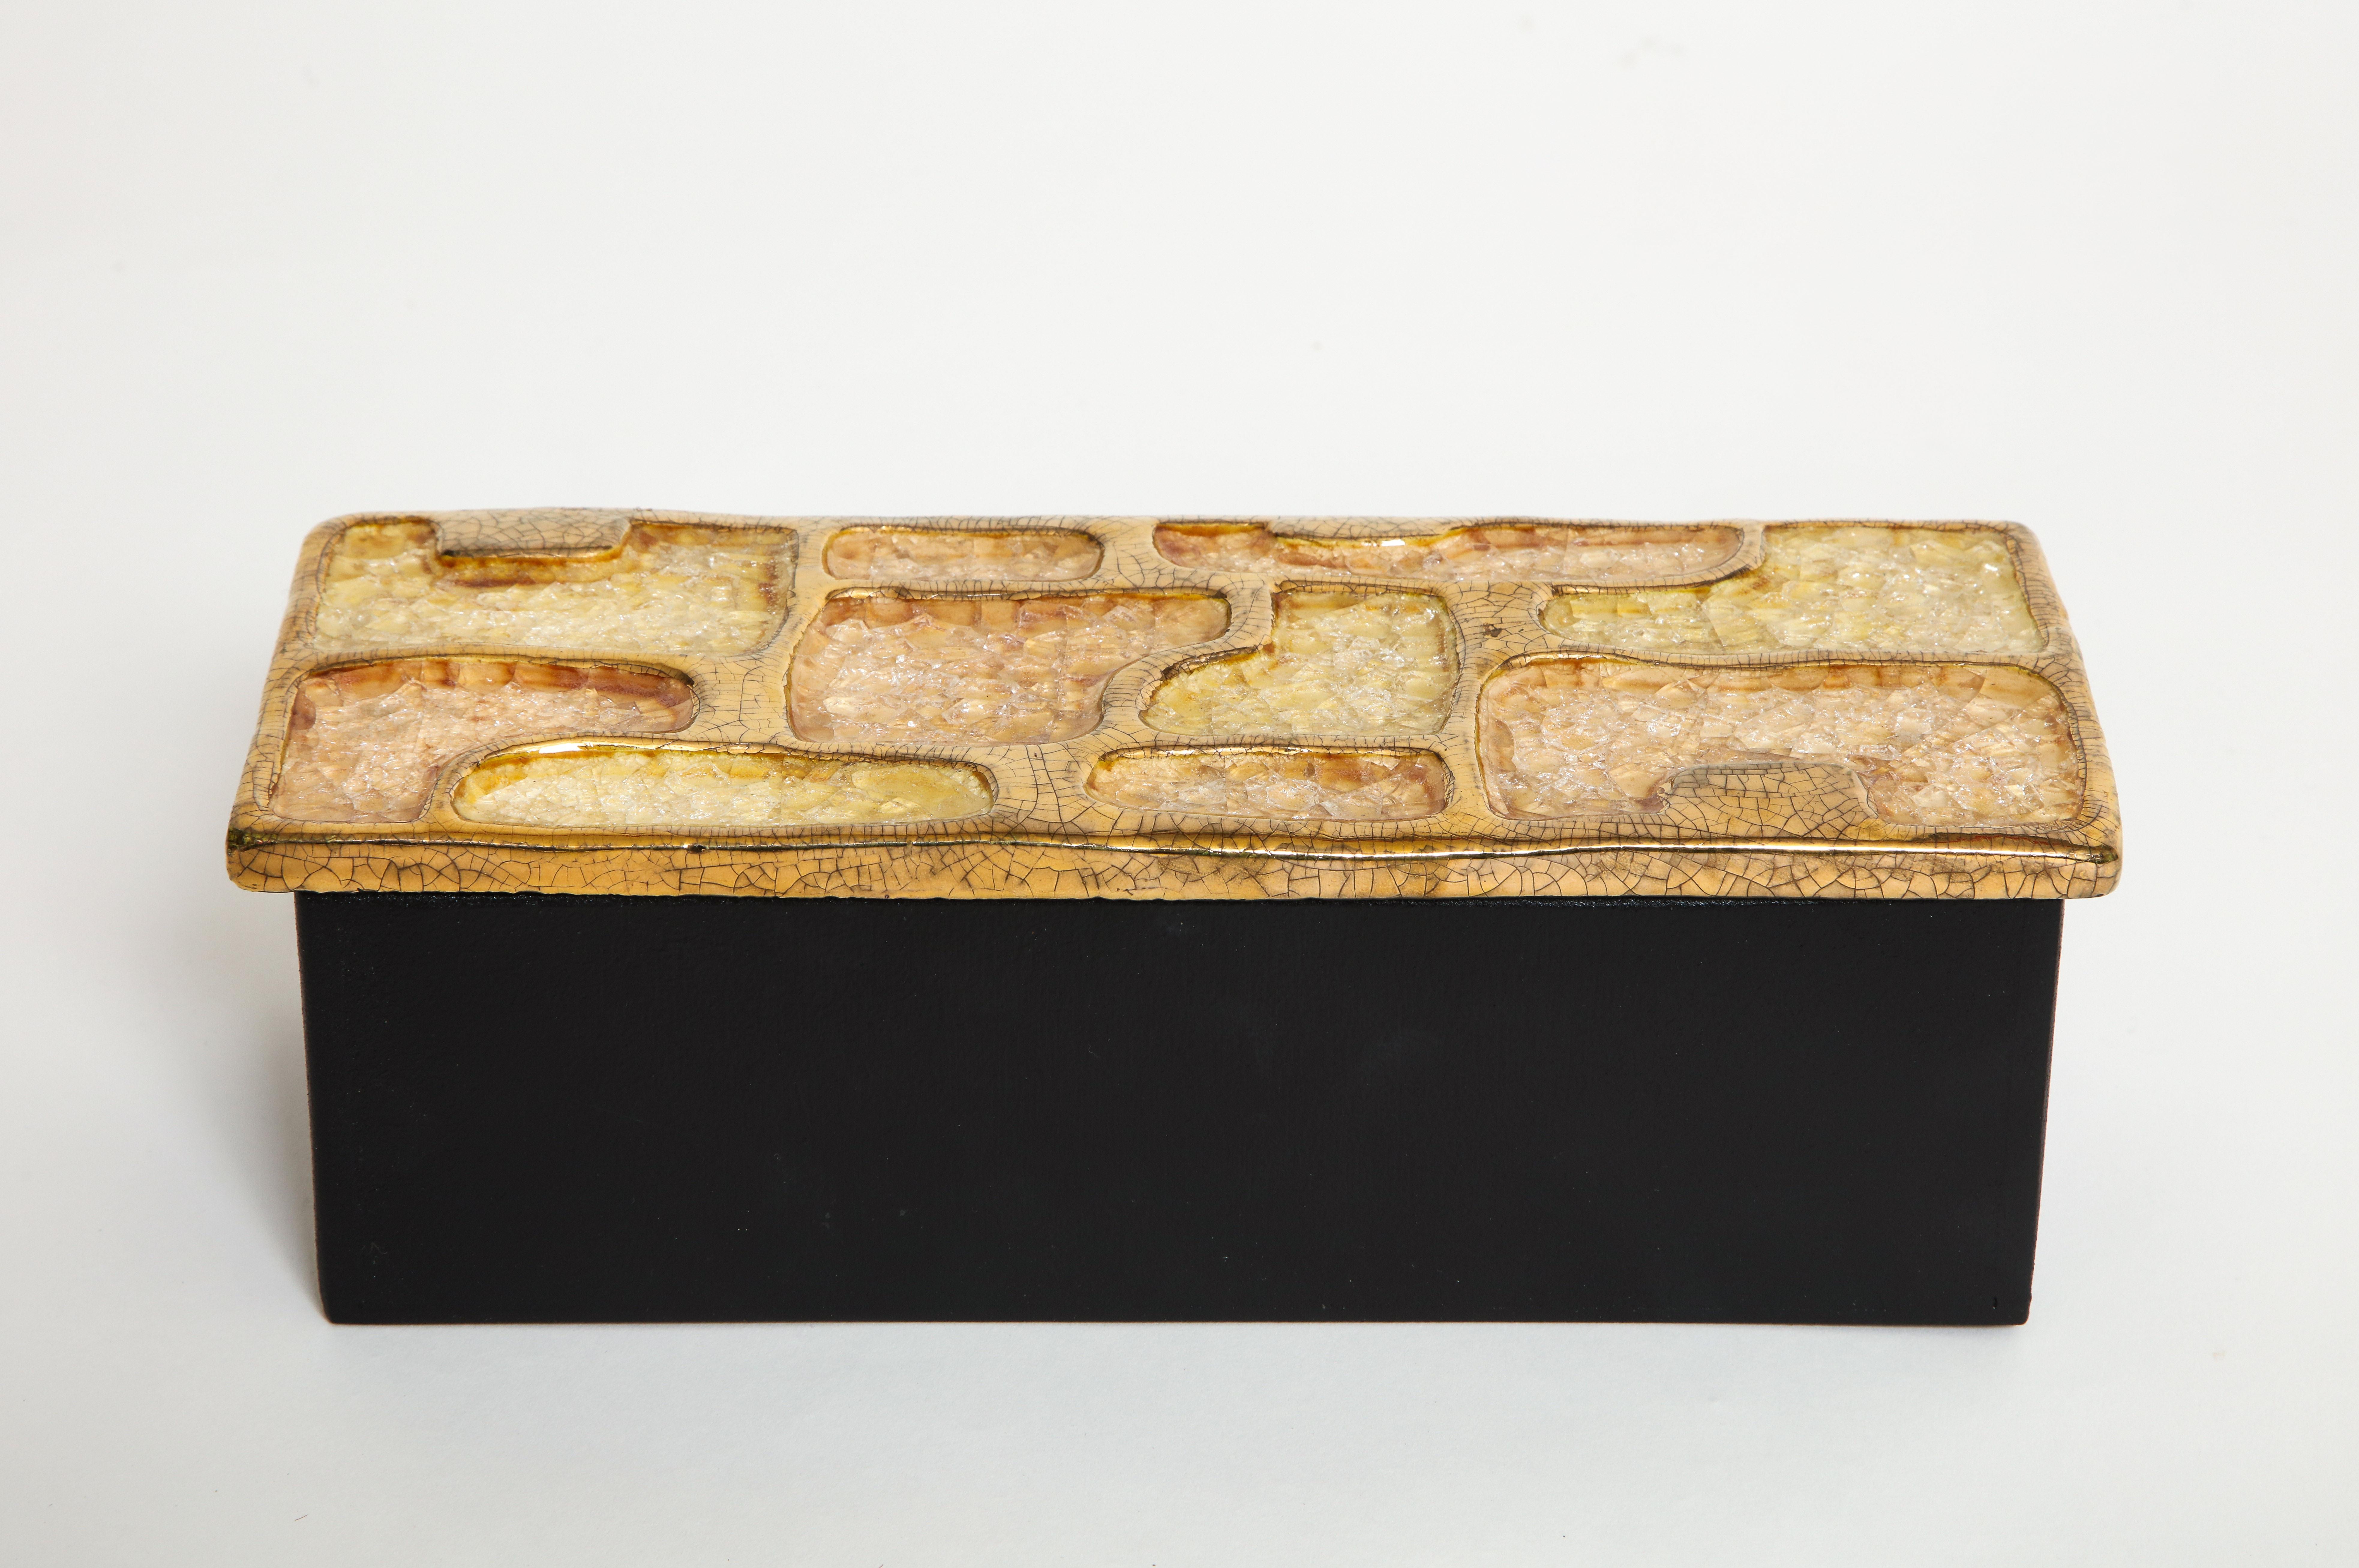 Boîte à bijoux en céramique émaillée jaune d'or midcentury, France, années 1960.

Une boîte exquise en céramique émaillée avec des sections incrustées de bijoux et de l'émail doré. La base de la boîte est en bois. Une belle boîte pour ranger des